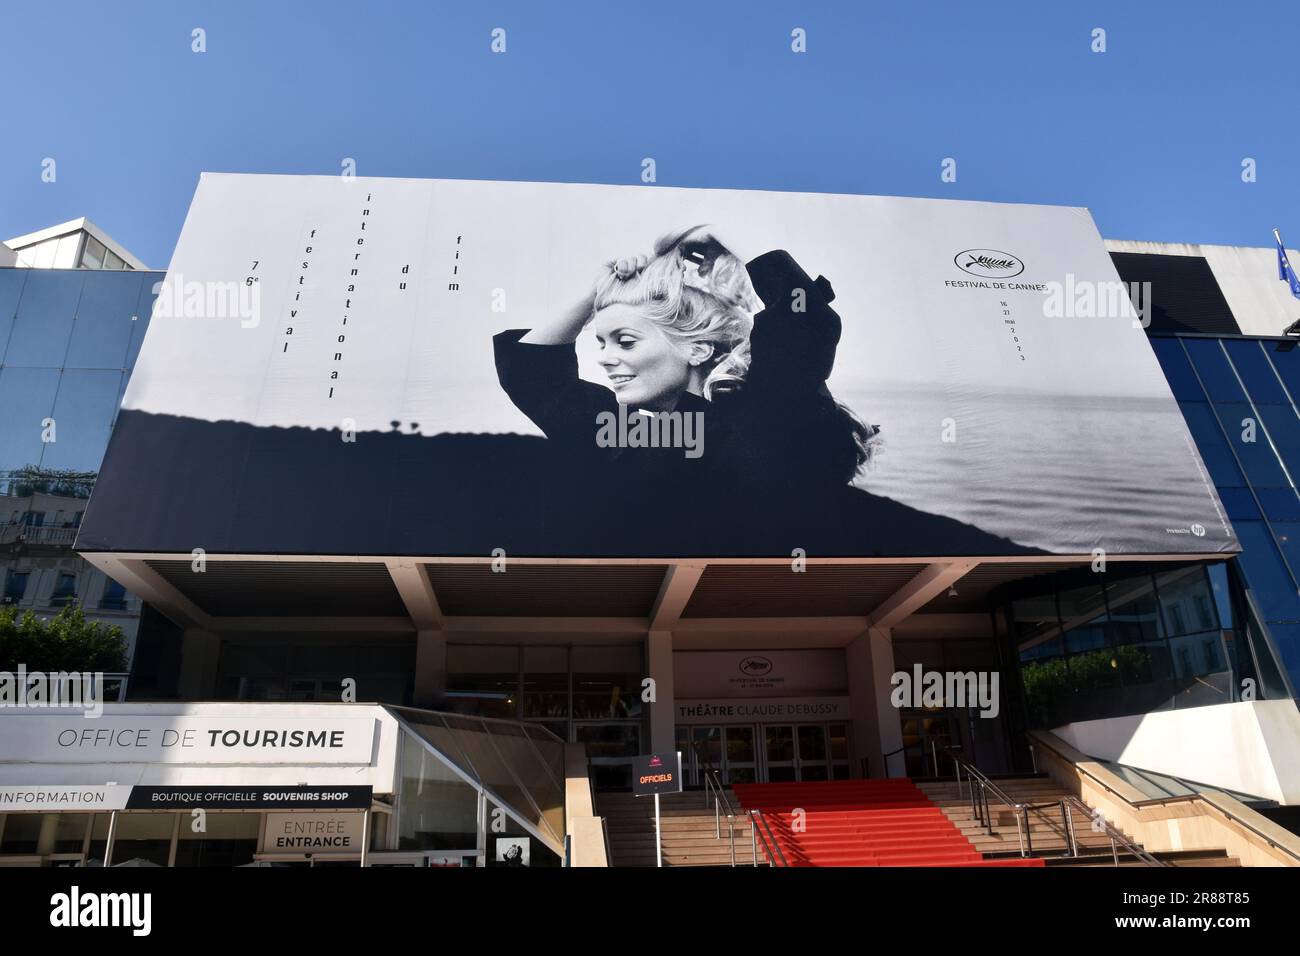 Francia, Côte azzurra, Cannes, il manifesto ufficiale del 76° festival internazionale del cinema, quest'anno l'attrice francese scelta è Catherine Deneuve. Foto Stock